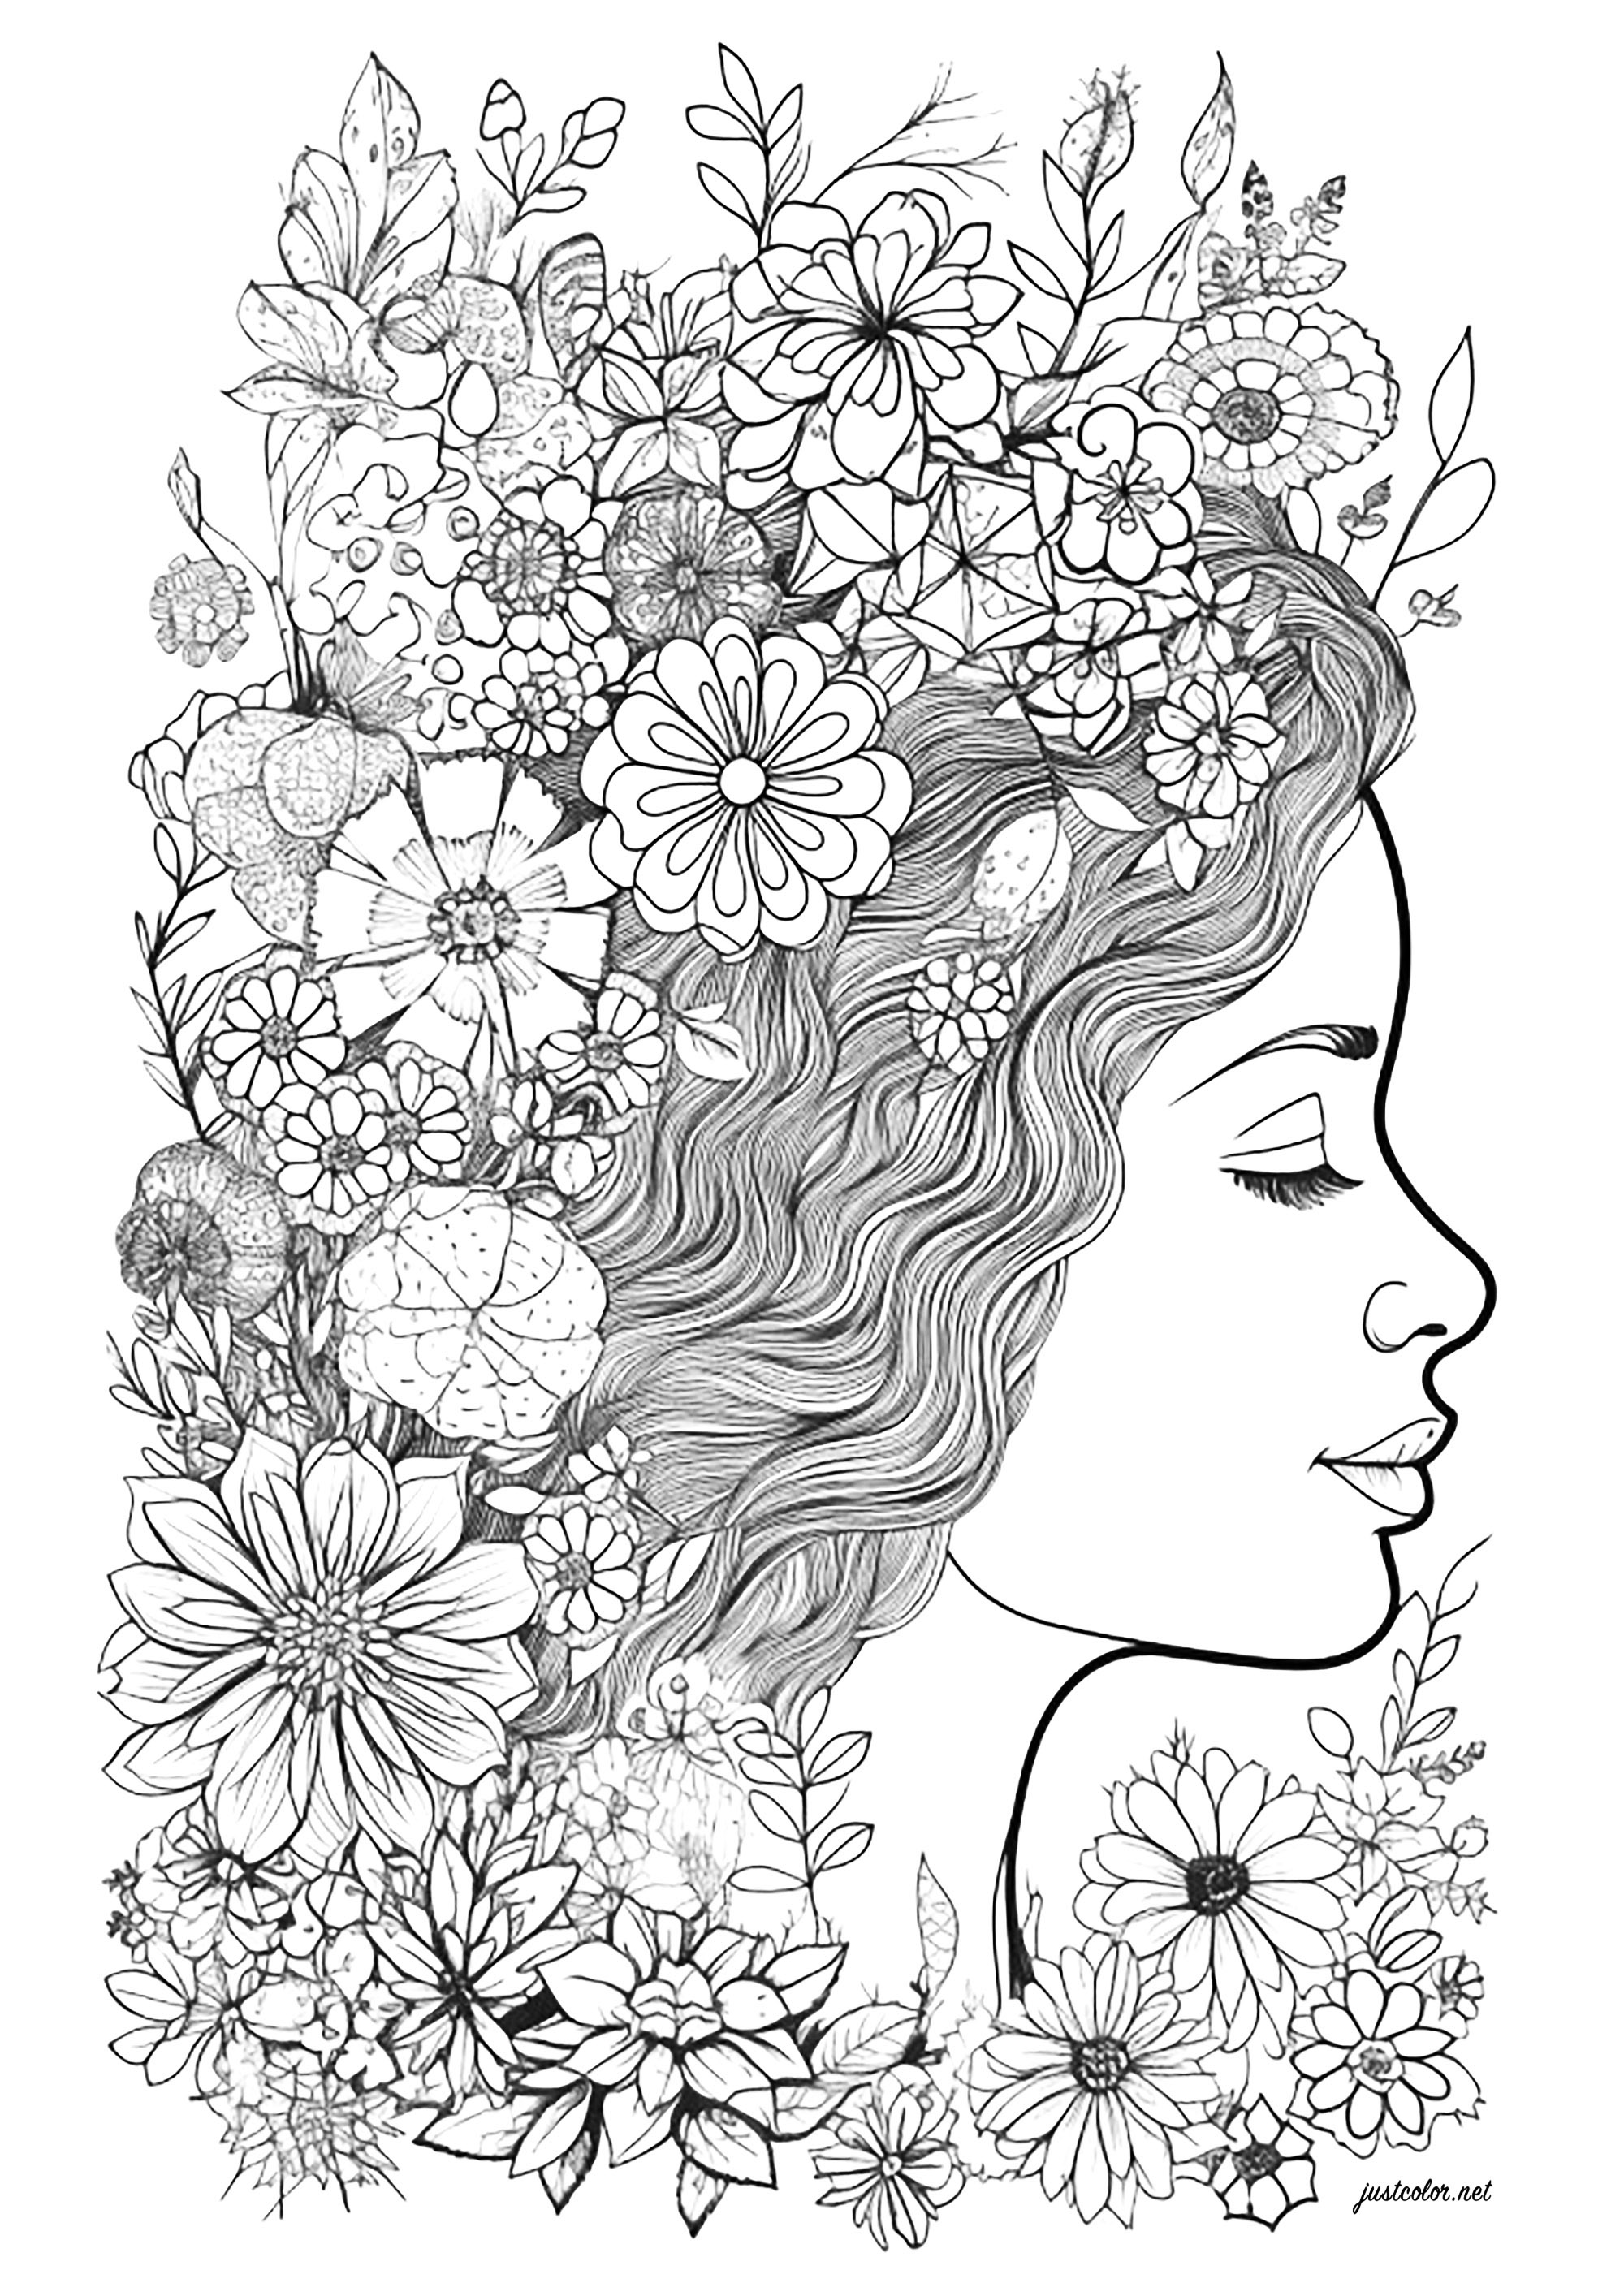 Rostro de mujer de perfil, rodeada de flores. Colorea todas estas hermosas flores en el pelo de esta mujer